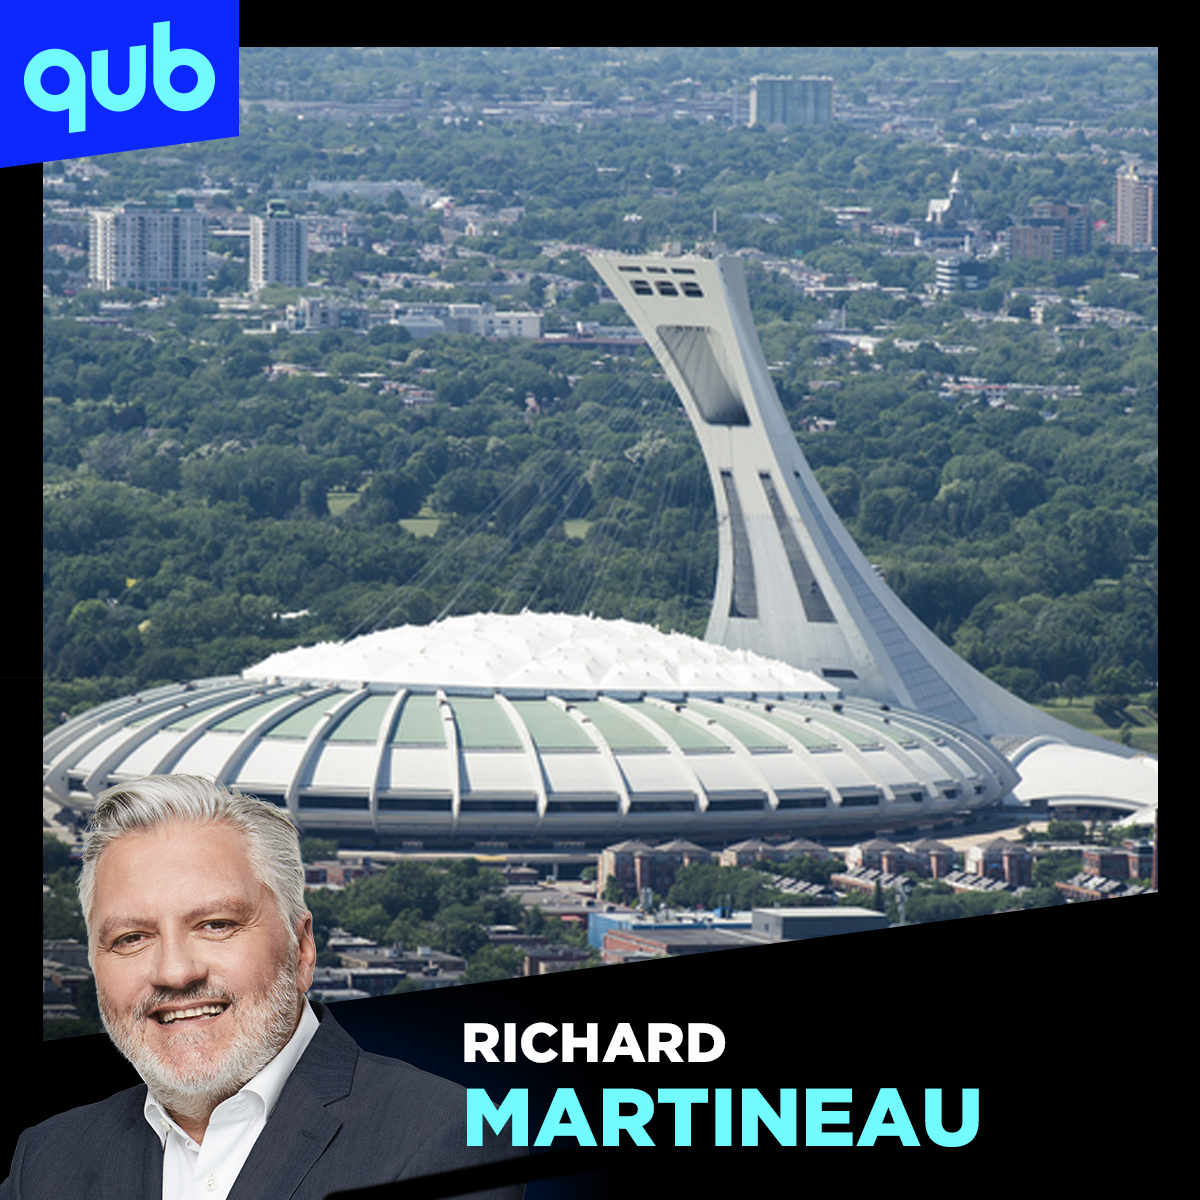 «On a un énorme stade qui sert à pas grand chose», déplore Martineau